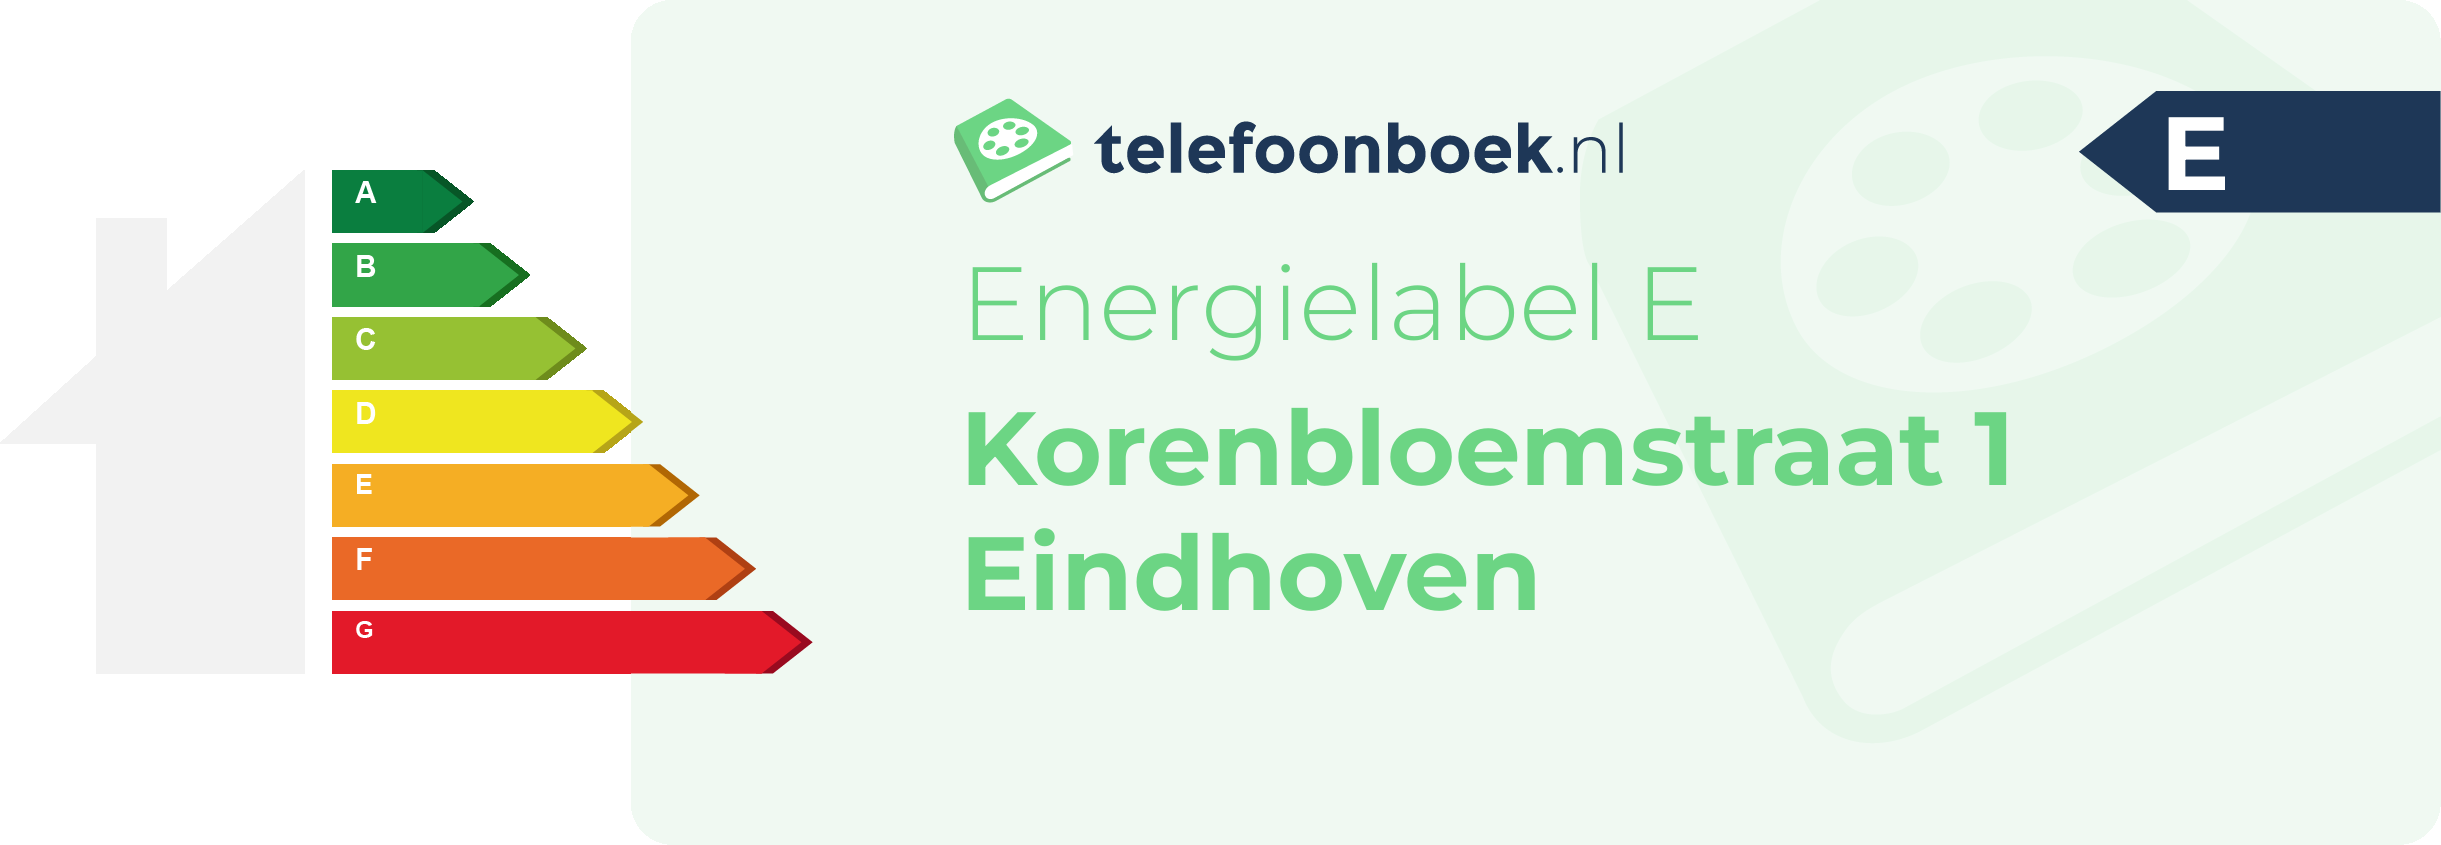 Energielabel Korenbloemstraat 1 Eindhoven